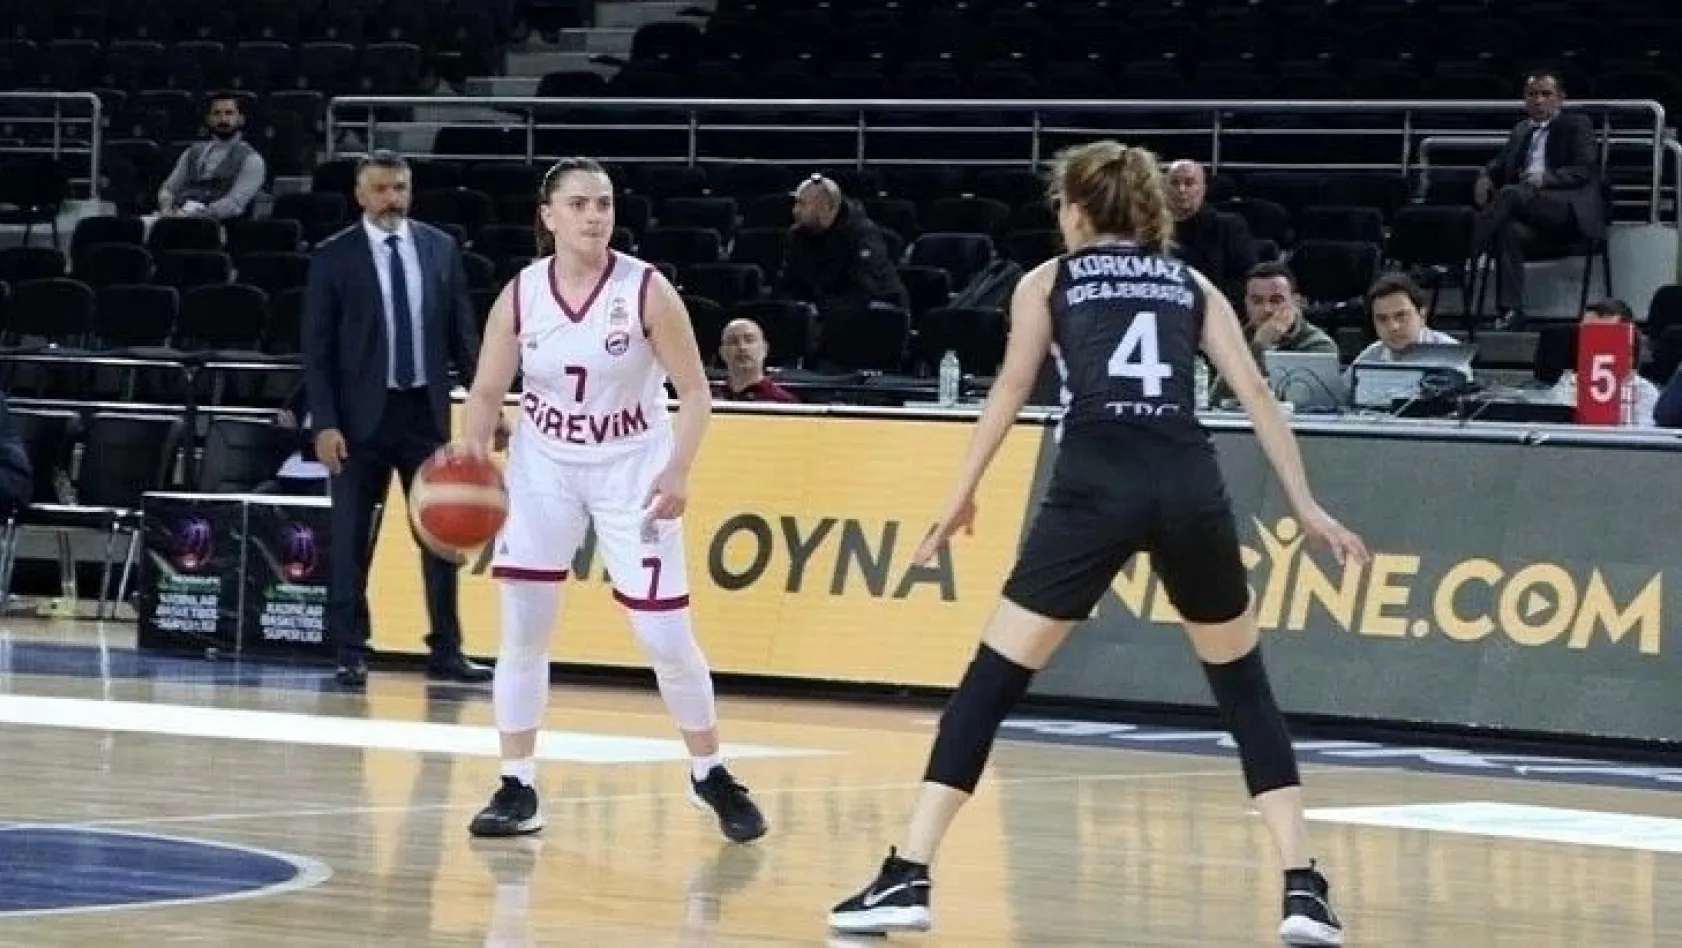 Elazığ İl Özel İdare - Kayseri Basketbol maçına korona virüs engeli